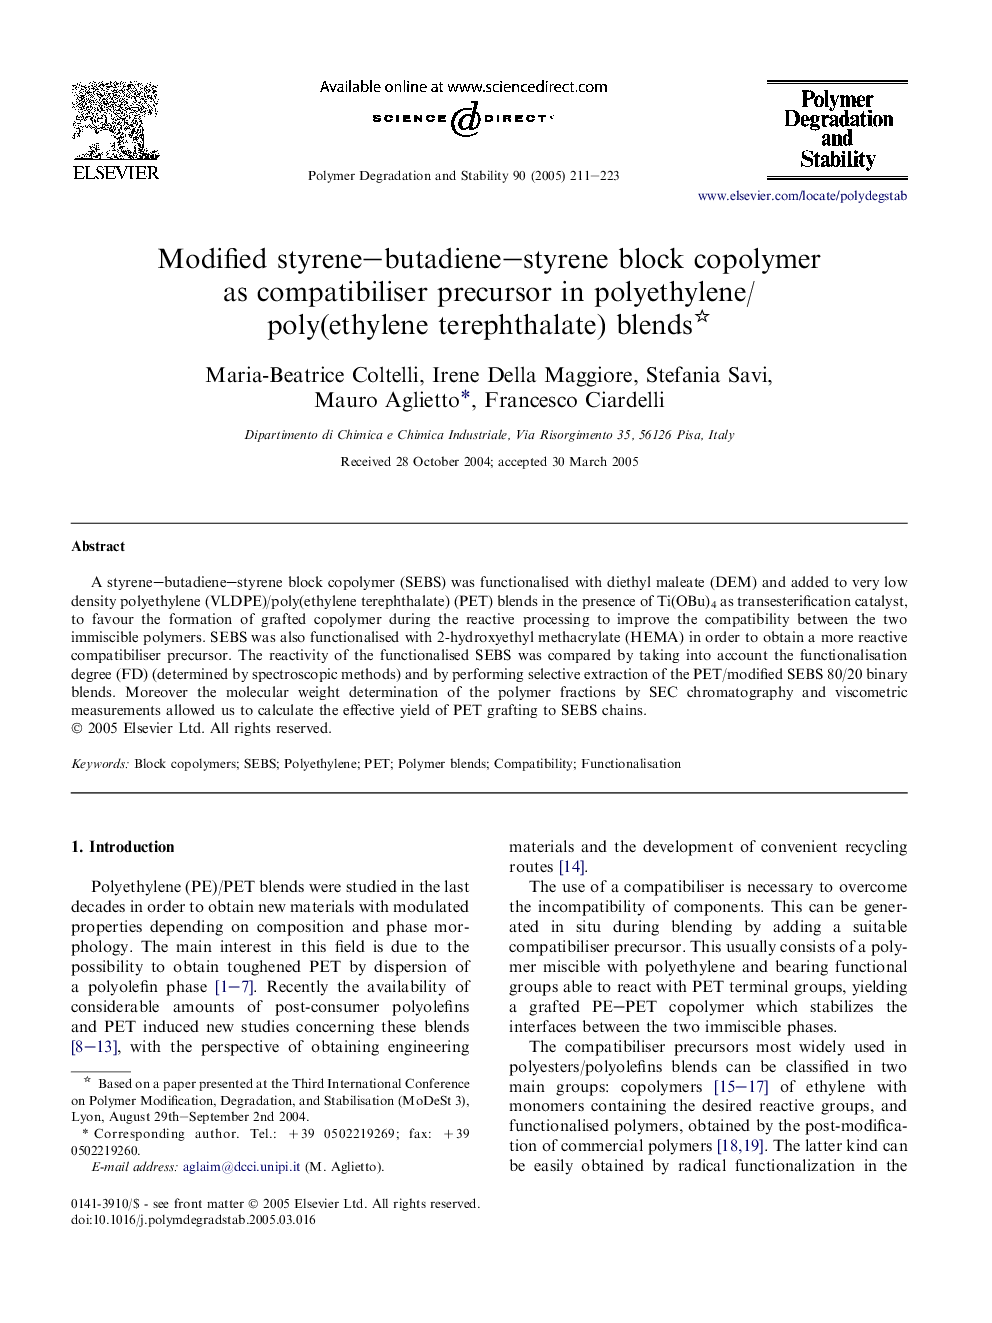 Modified styrene-butadiene-styrene block copolymer as compatibiliser precursor in polyethylene/poly(ethylene terephthalate) blends